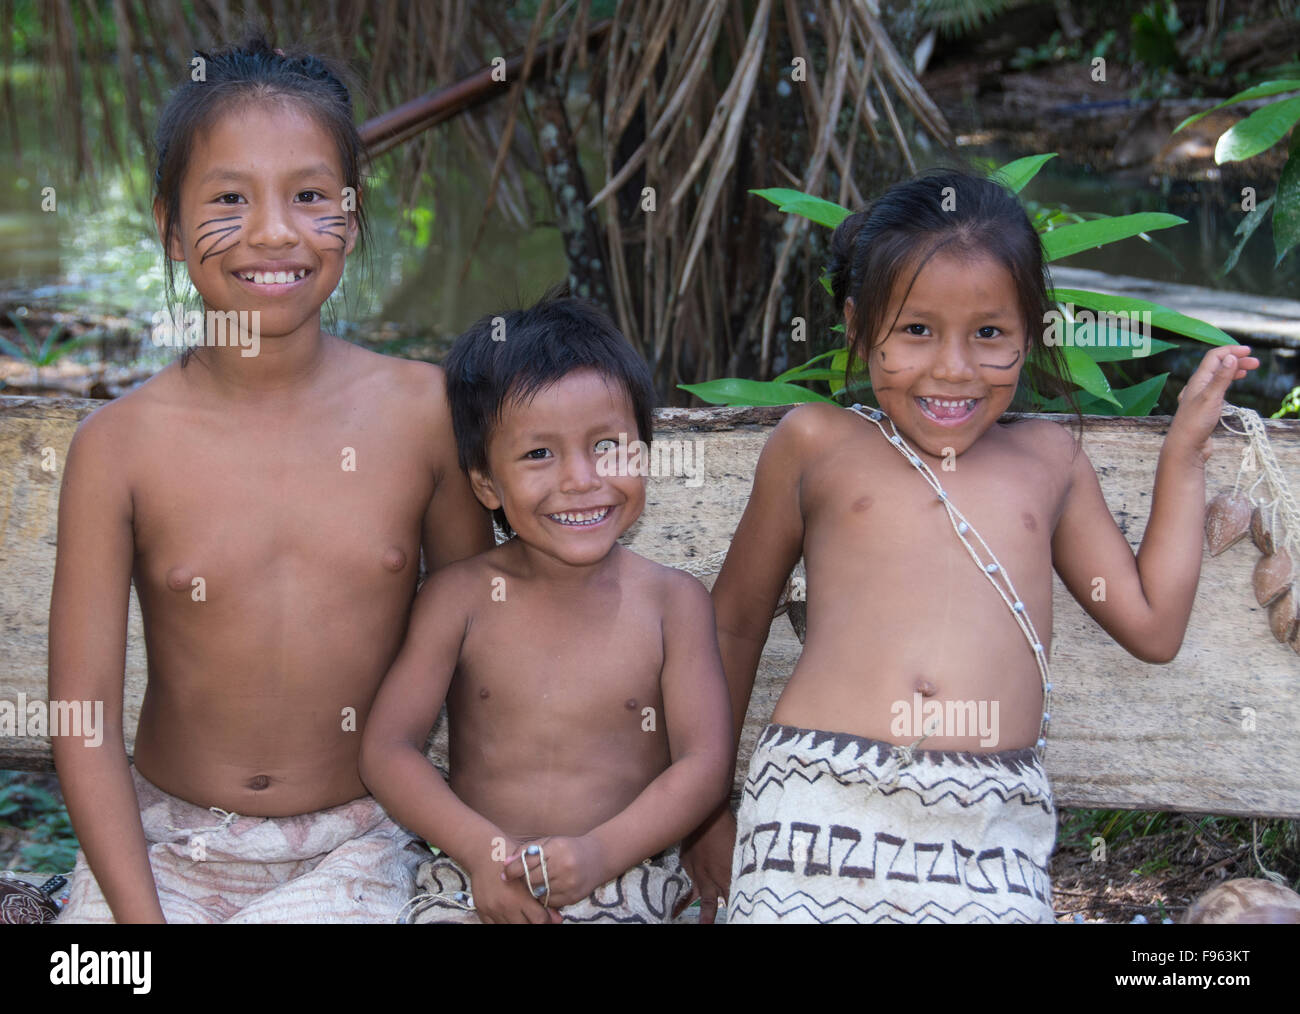 Amazon indiginous naked tribe nude